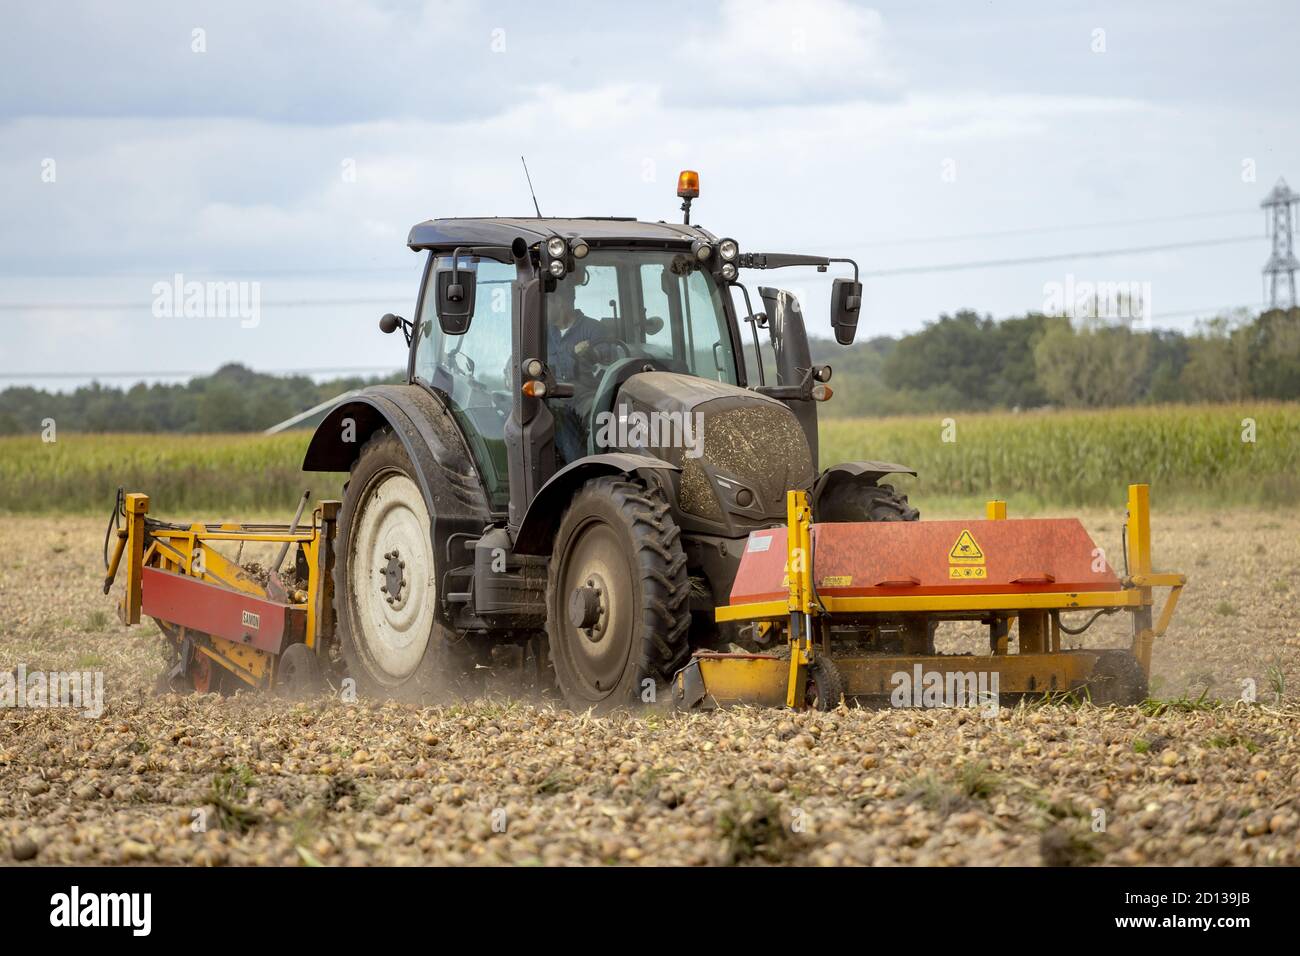 Tractor grubbing onion field Stock Photo